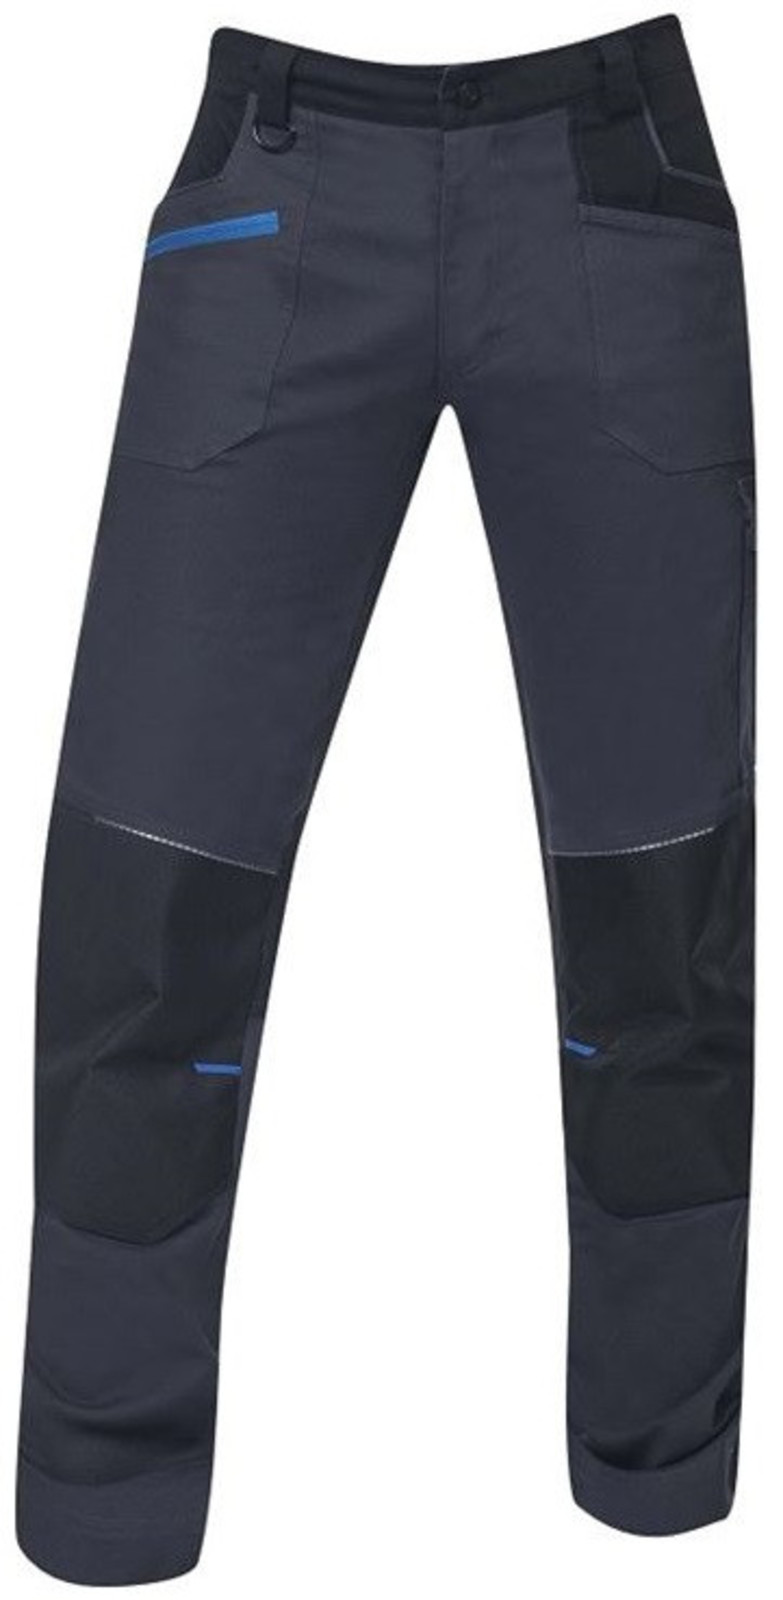 Pánske strečové montérkové nohavice Ardon 4Xstretch - veľkosť: 50, farba: tmavo šedá